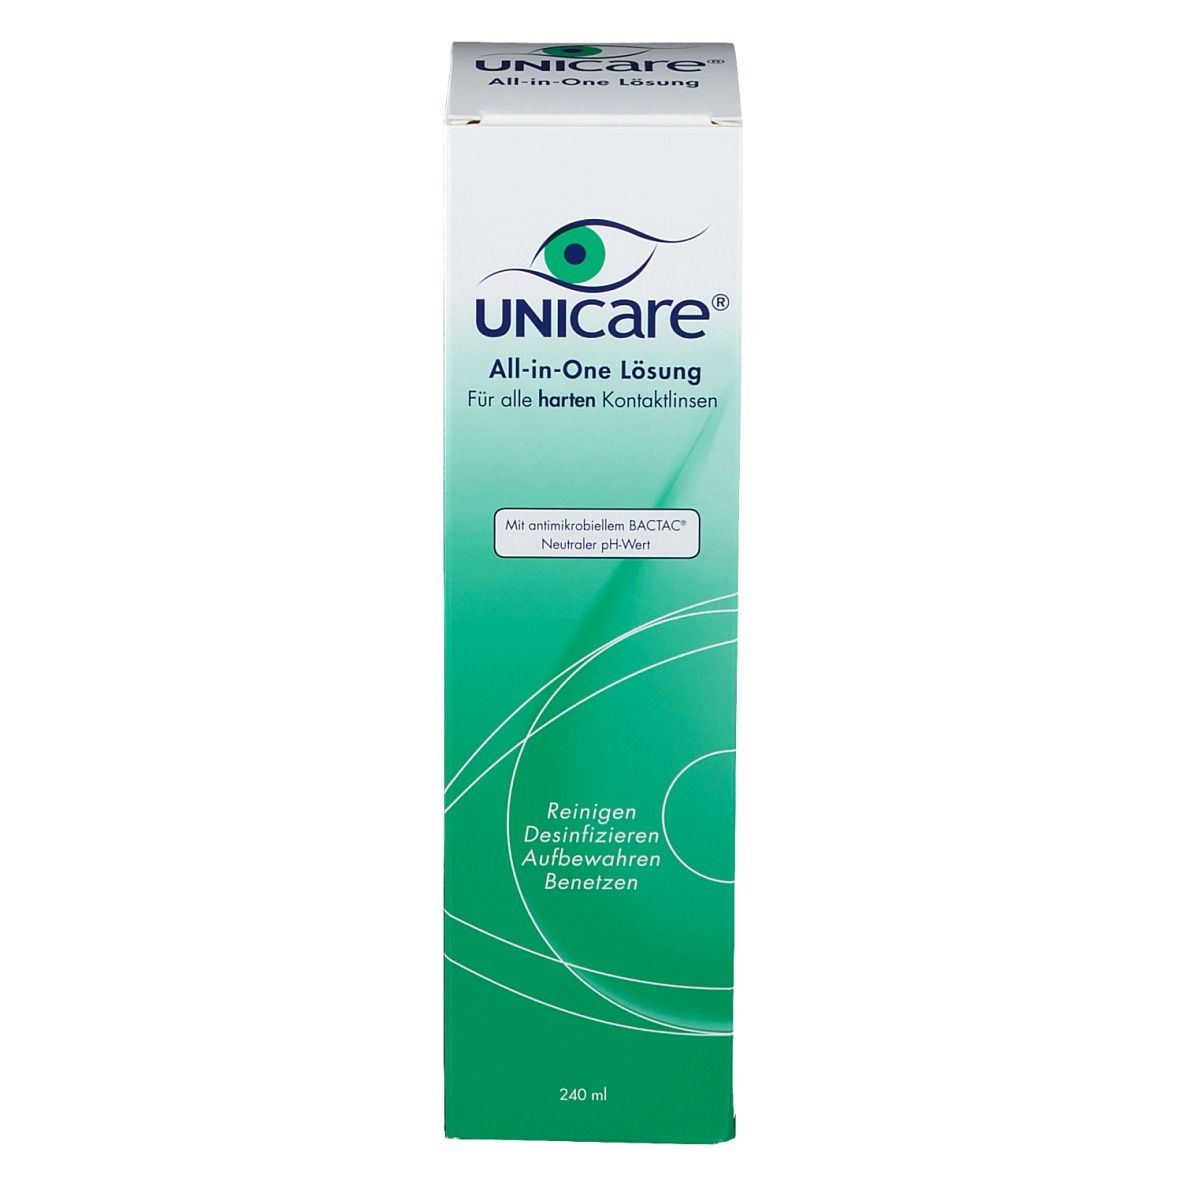 Unicare® All-in-One Lösung für Hartlinsen